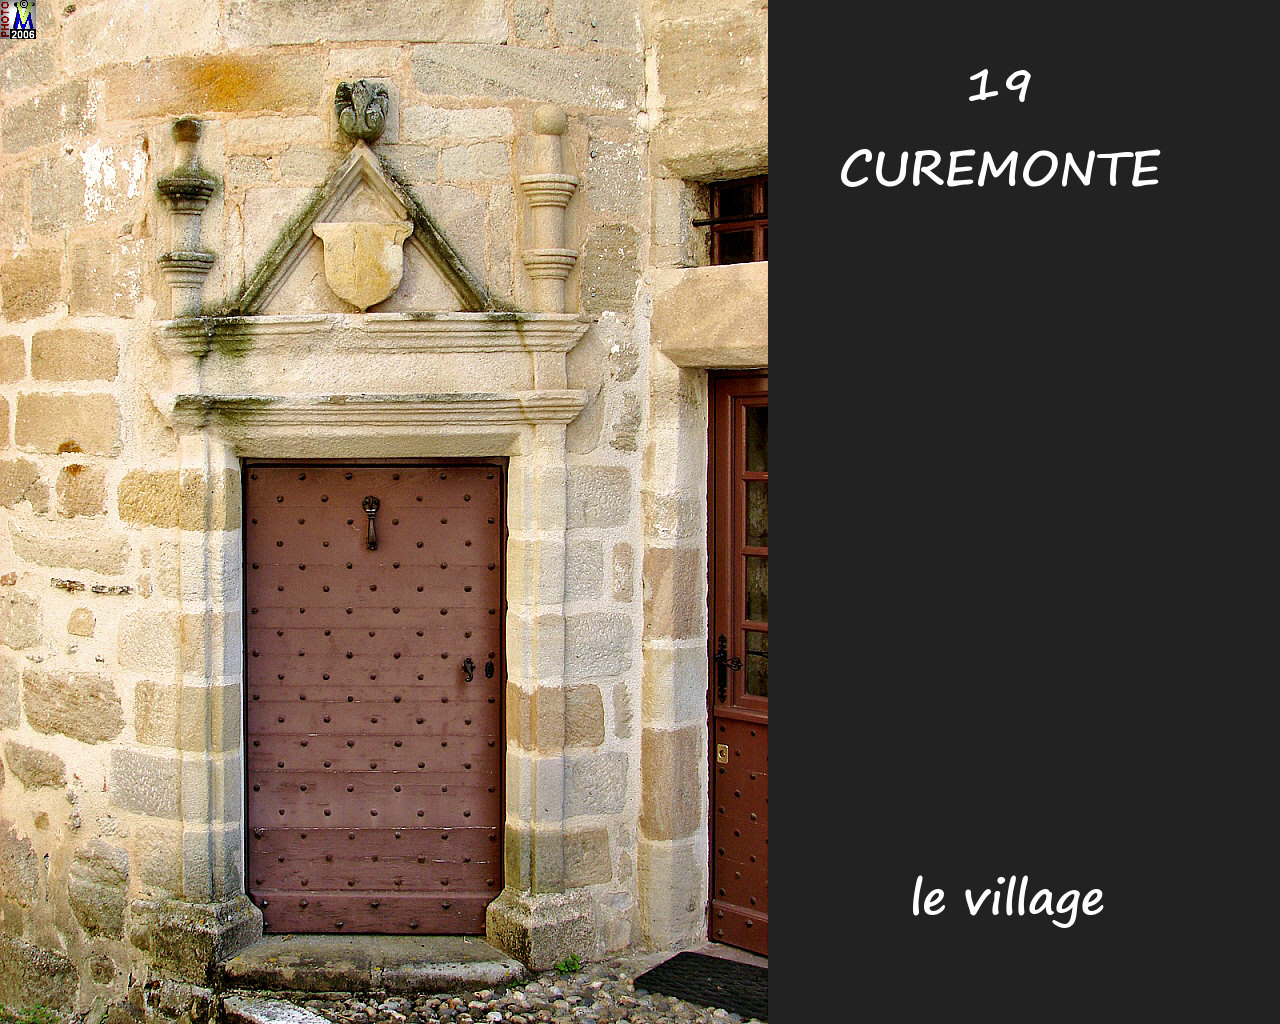 19CUREMONTE_village_122.jpg